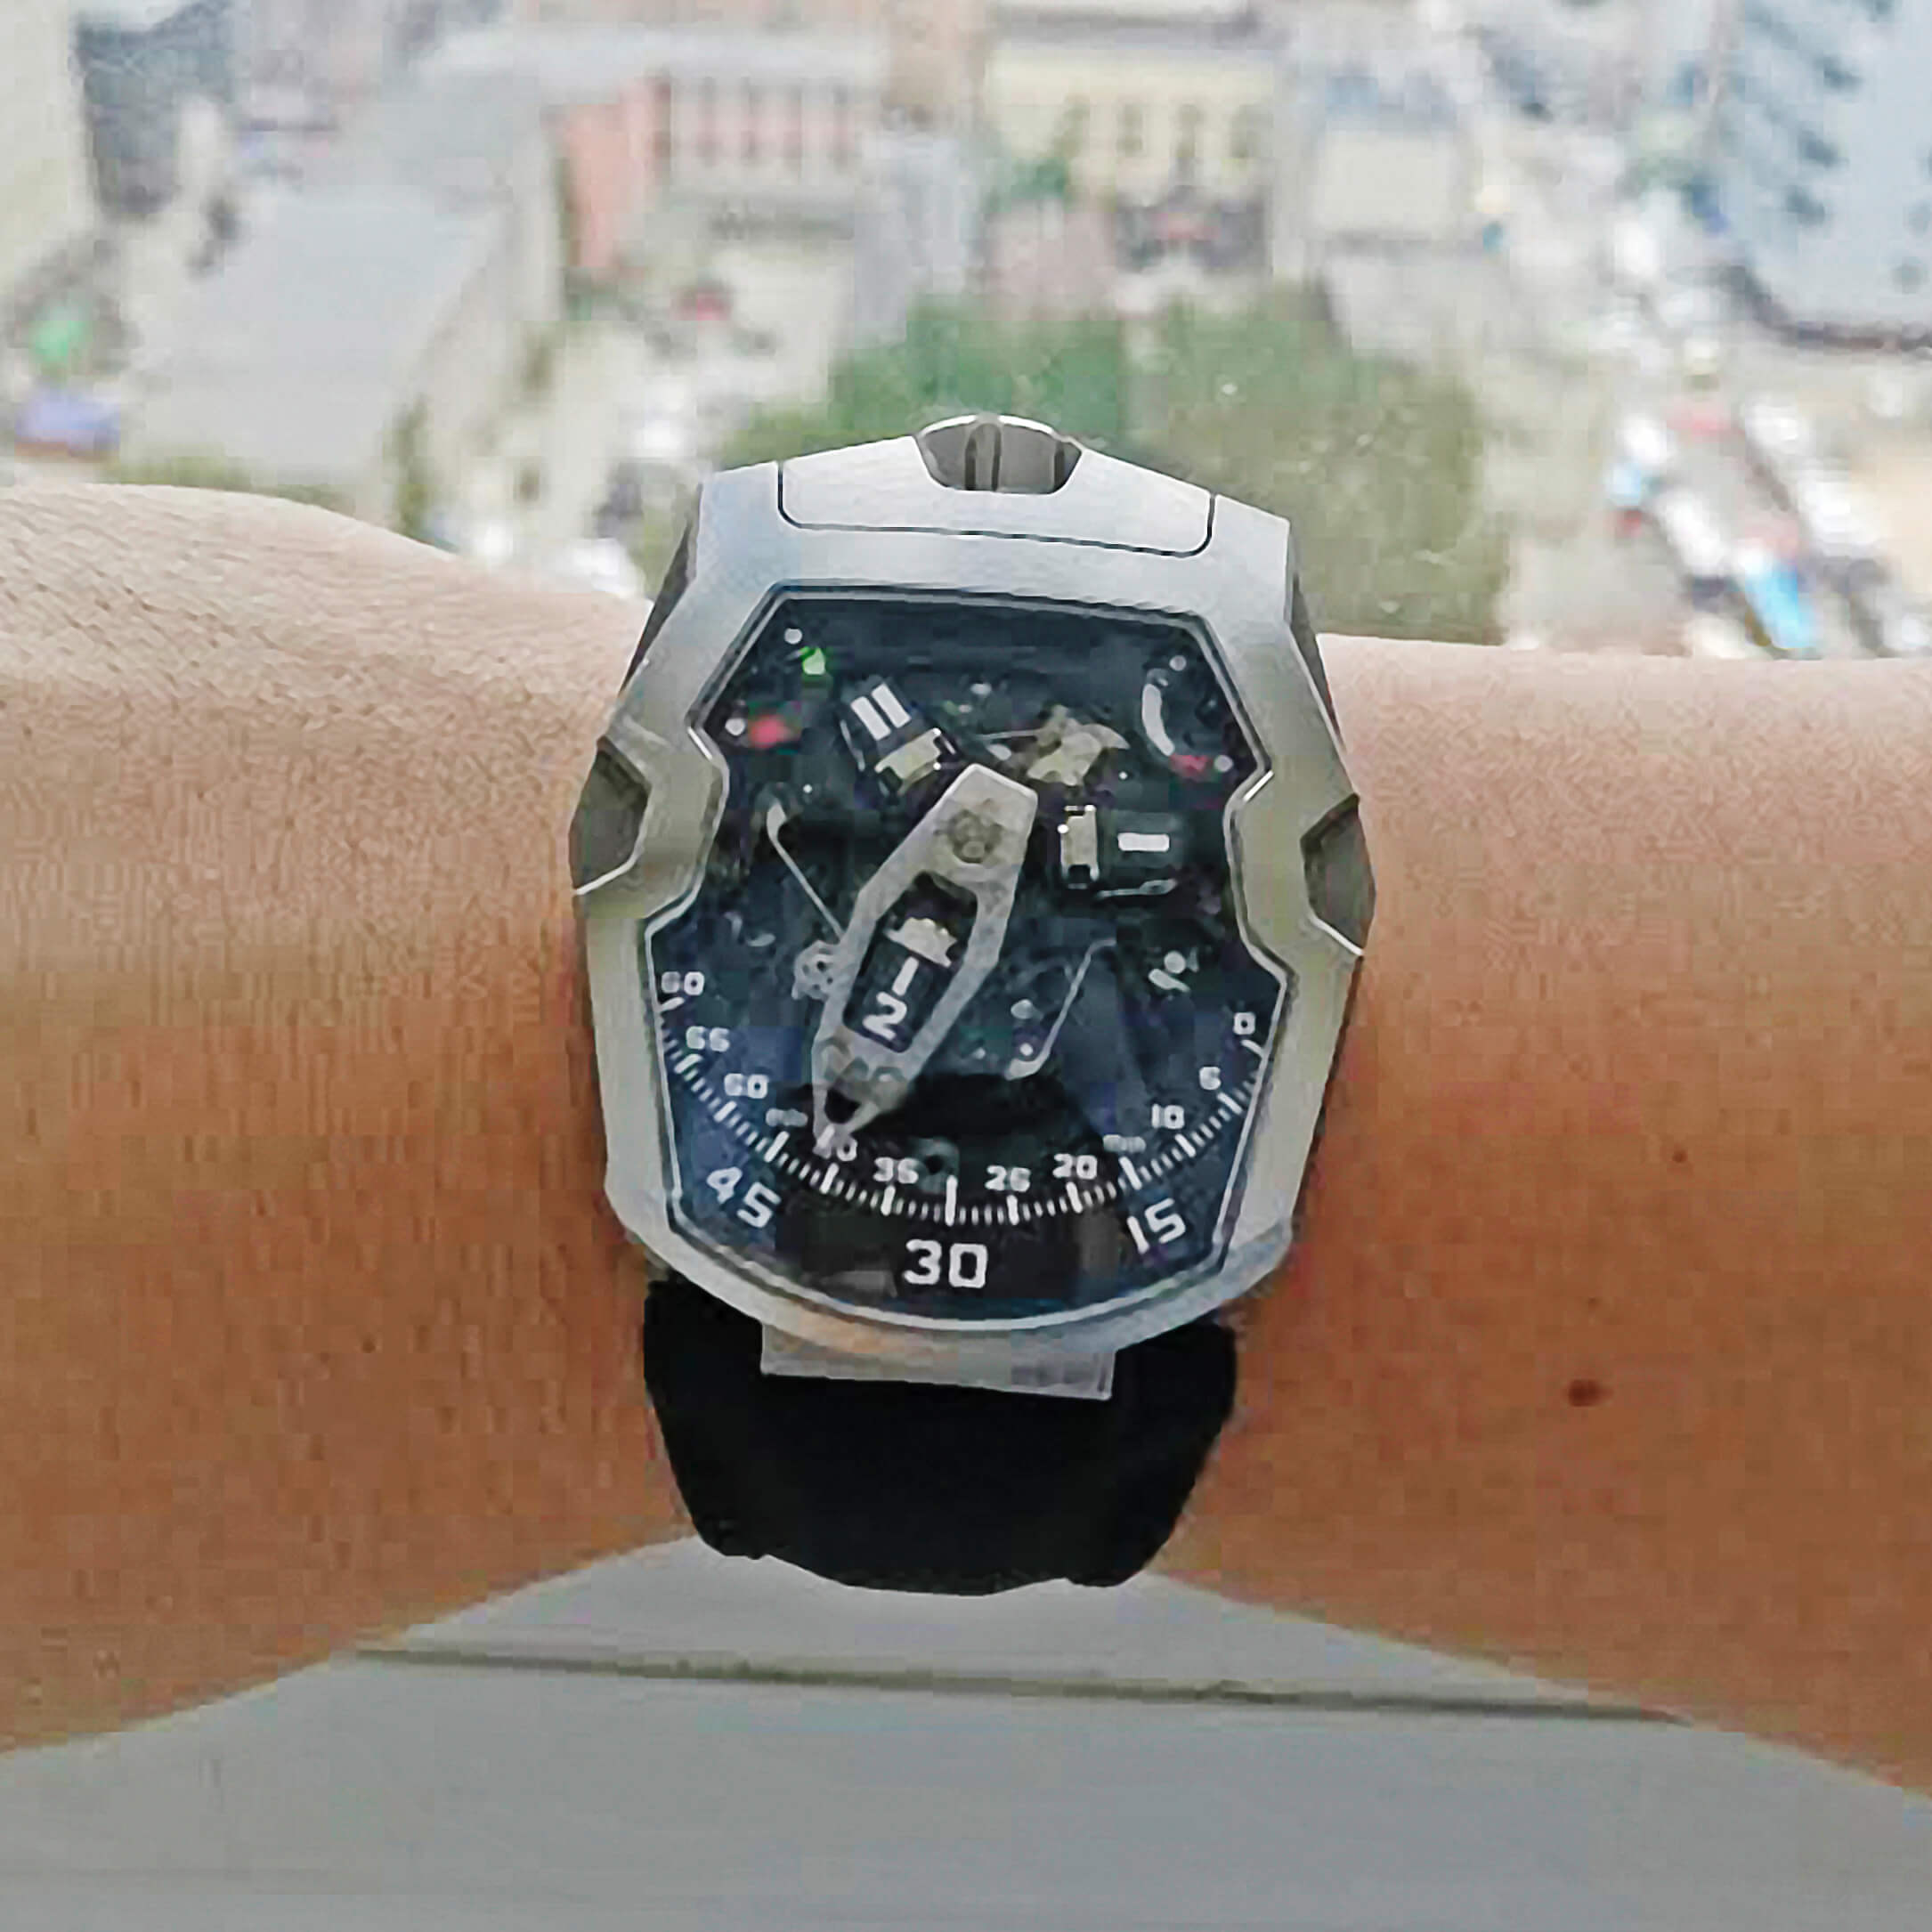 ISAAC's watch URWERK UR-210